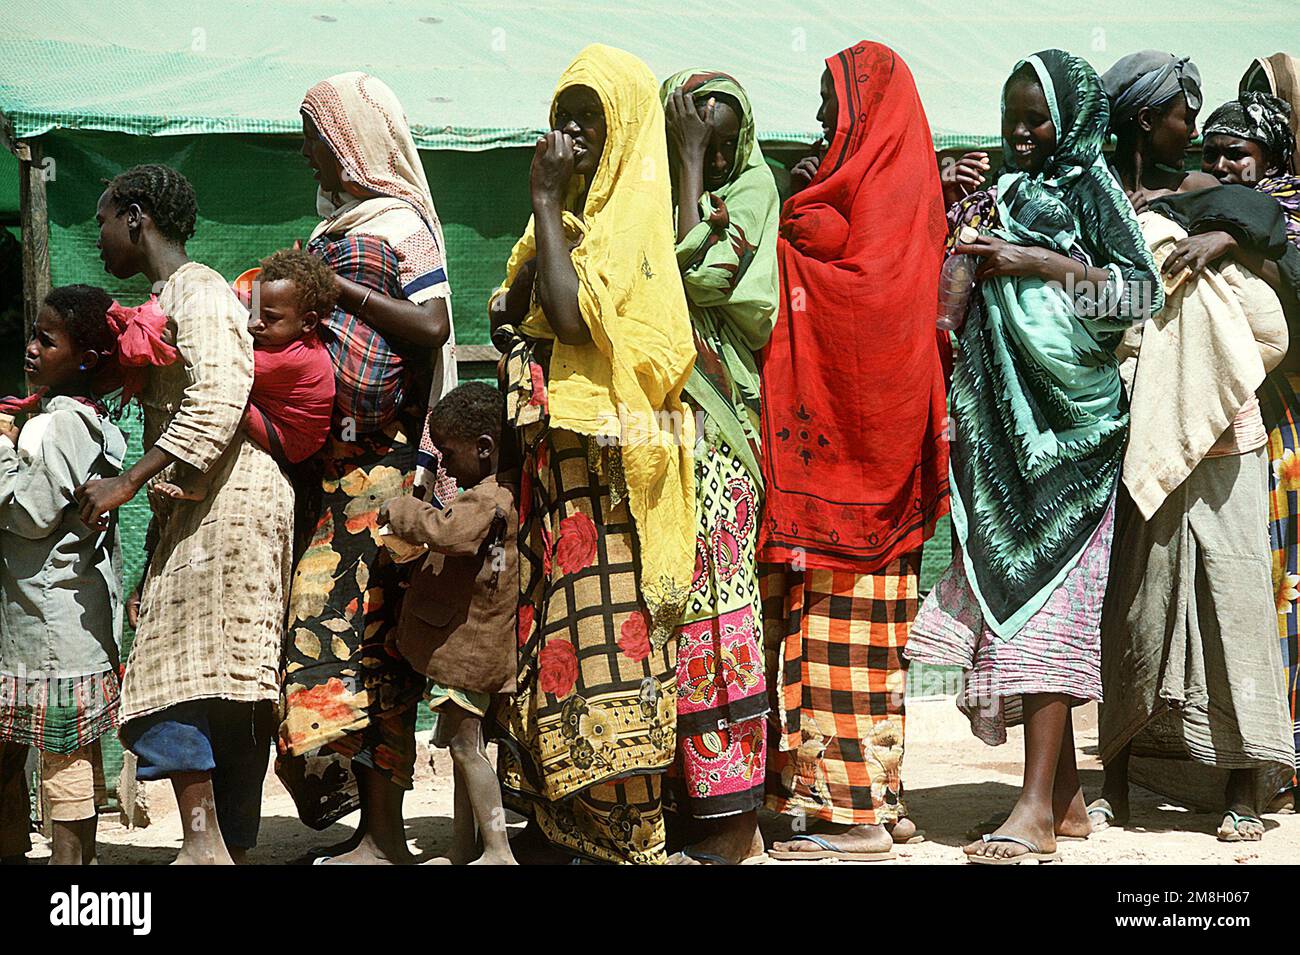 Les femmes et les enfants somaliens se font la queue dans une station d'assistance pendant l'opération multinationale de secours Restore Hope. Objet opération/série: RÉTABLIR L'ESPOIR pays: Somalie (SOM) Banque D'Images